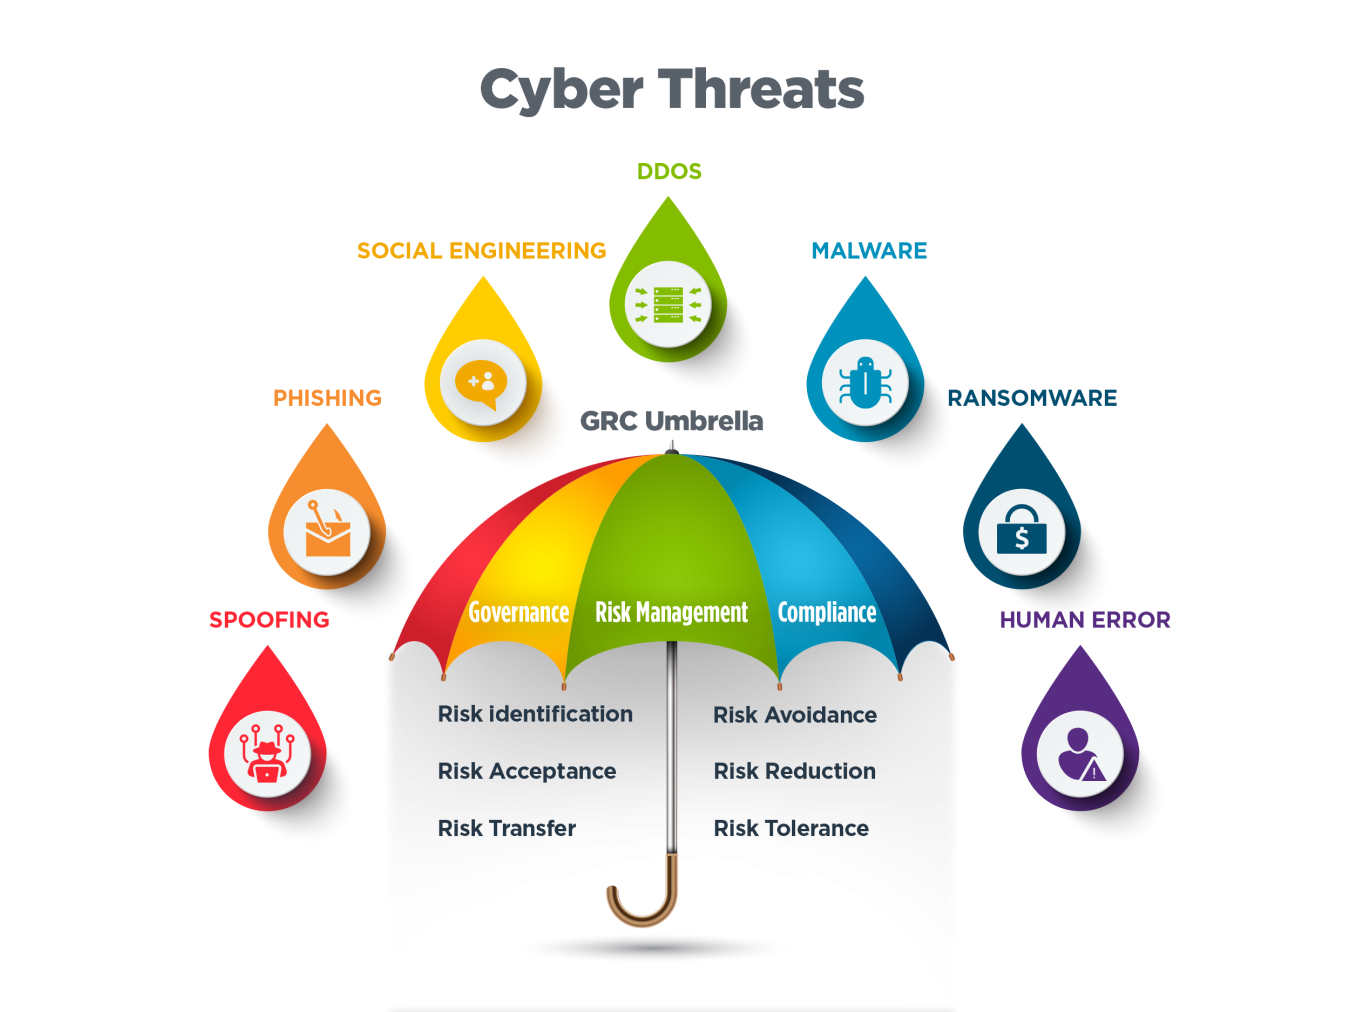 Cyber threats umbrella